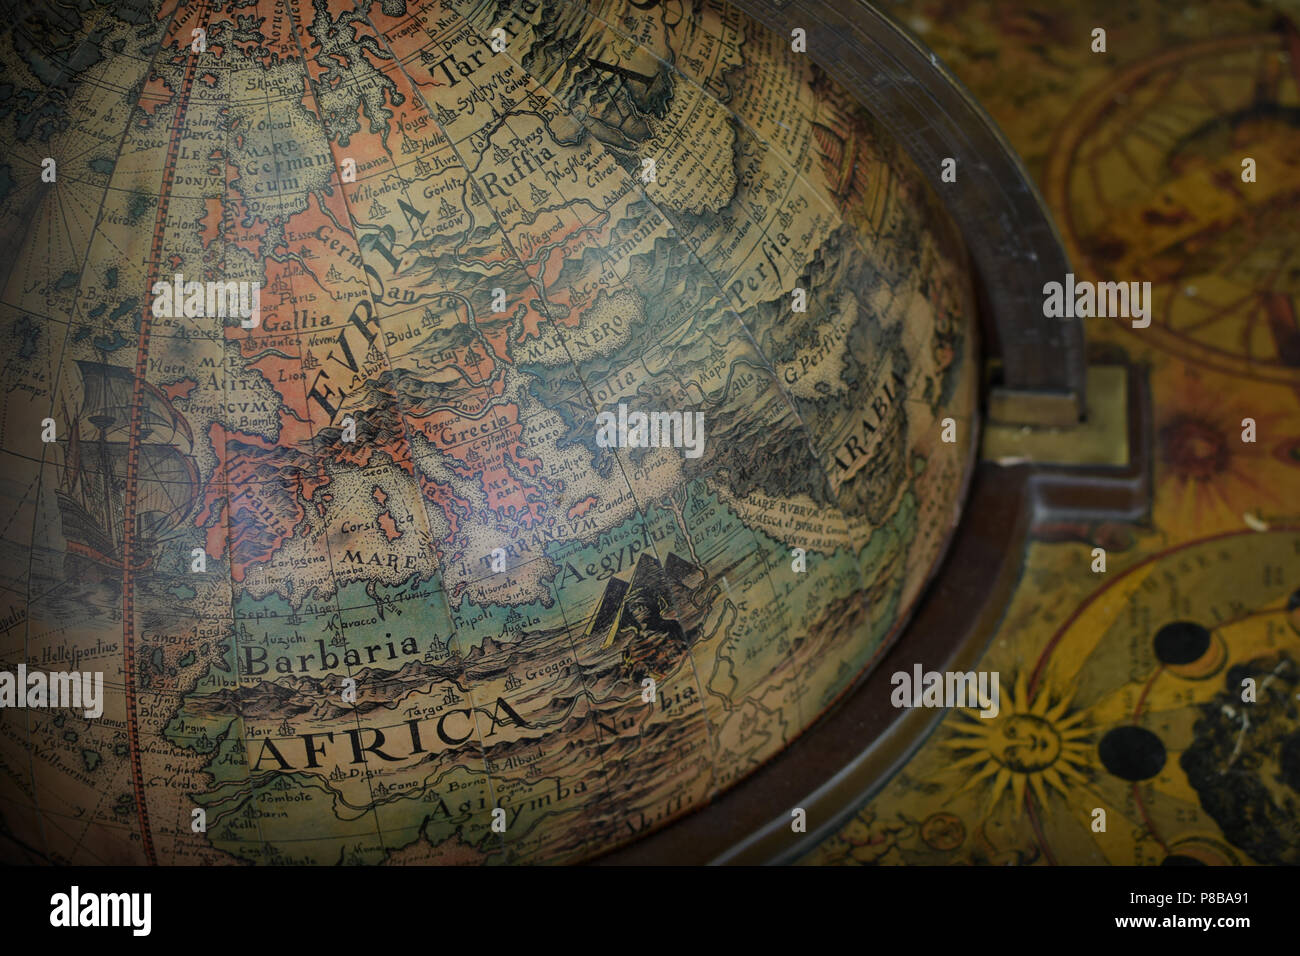 Détail de l'ancien monde globe terrestre antique avec la carte de l'Europe et l'Afrique. Banque D'Images